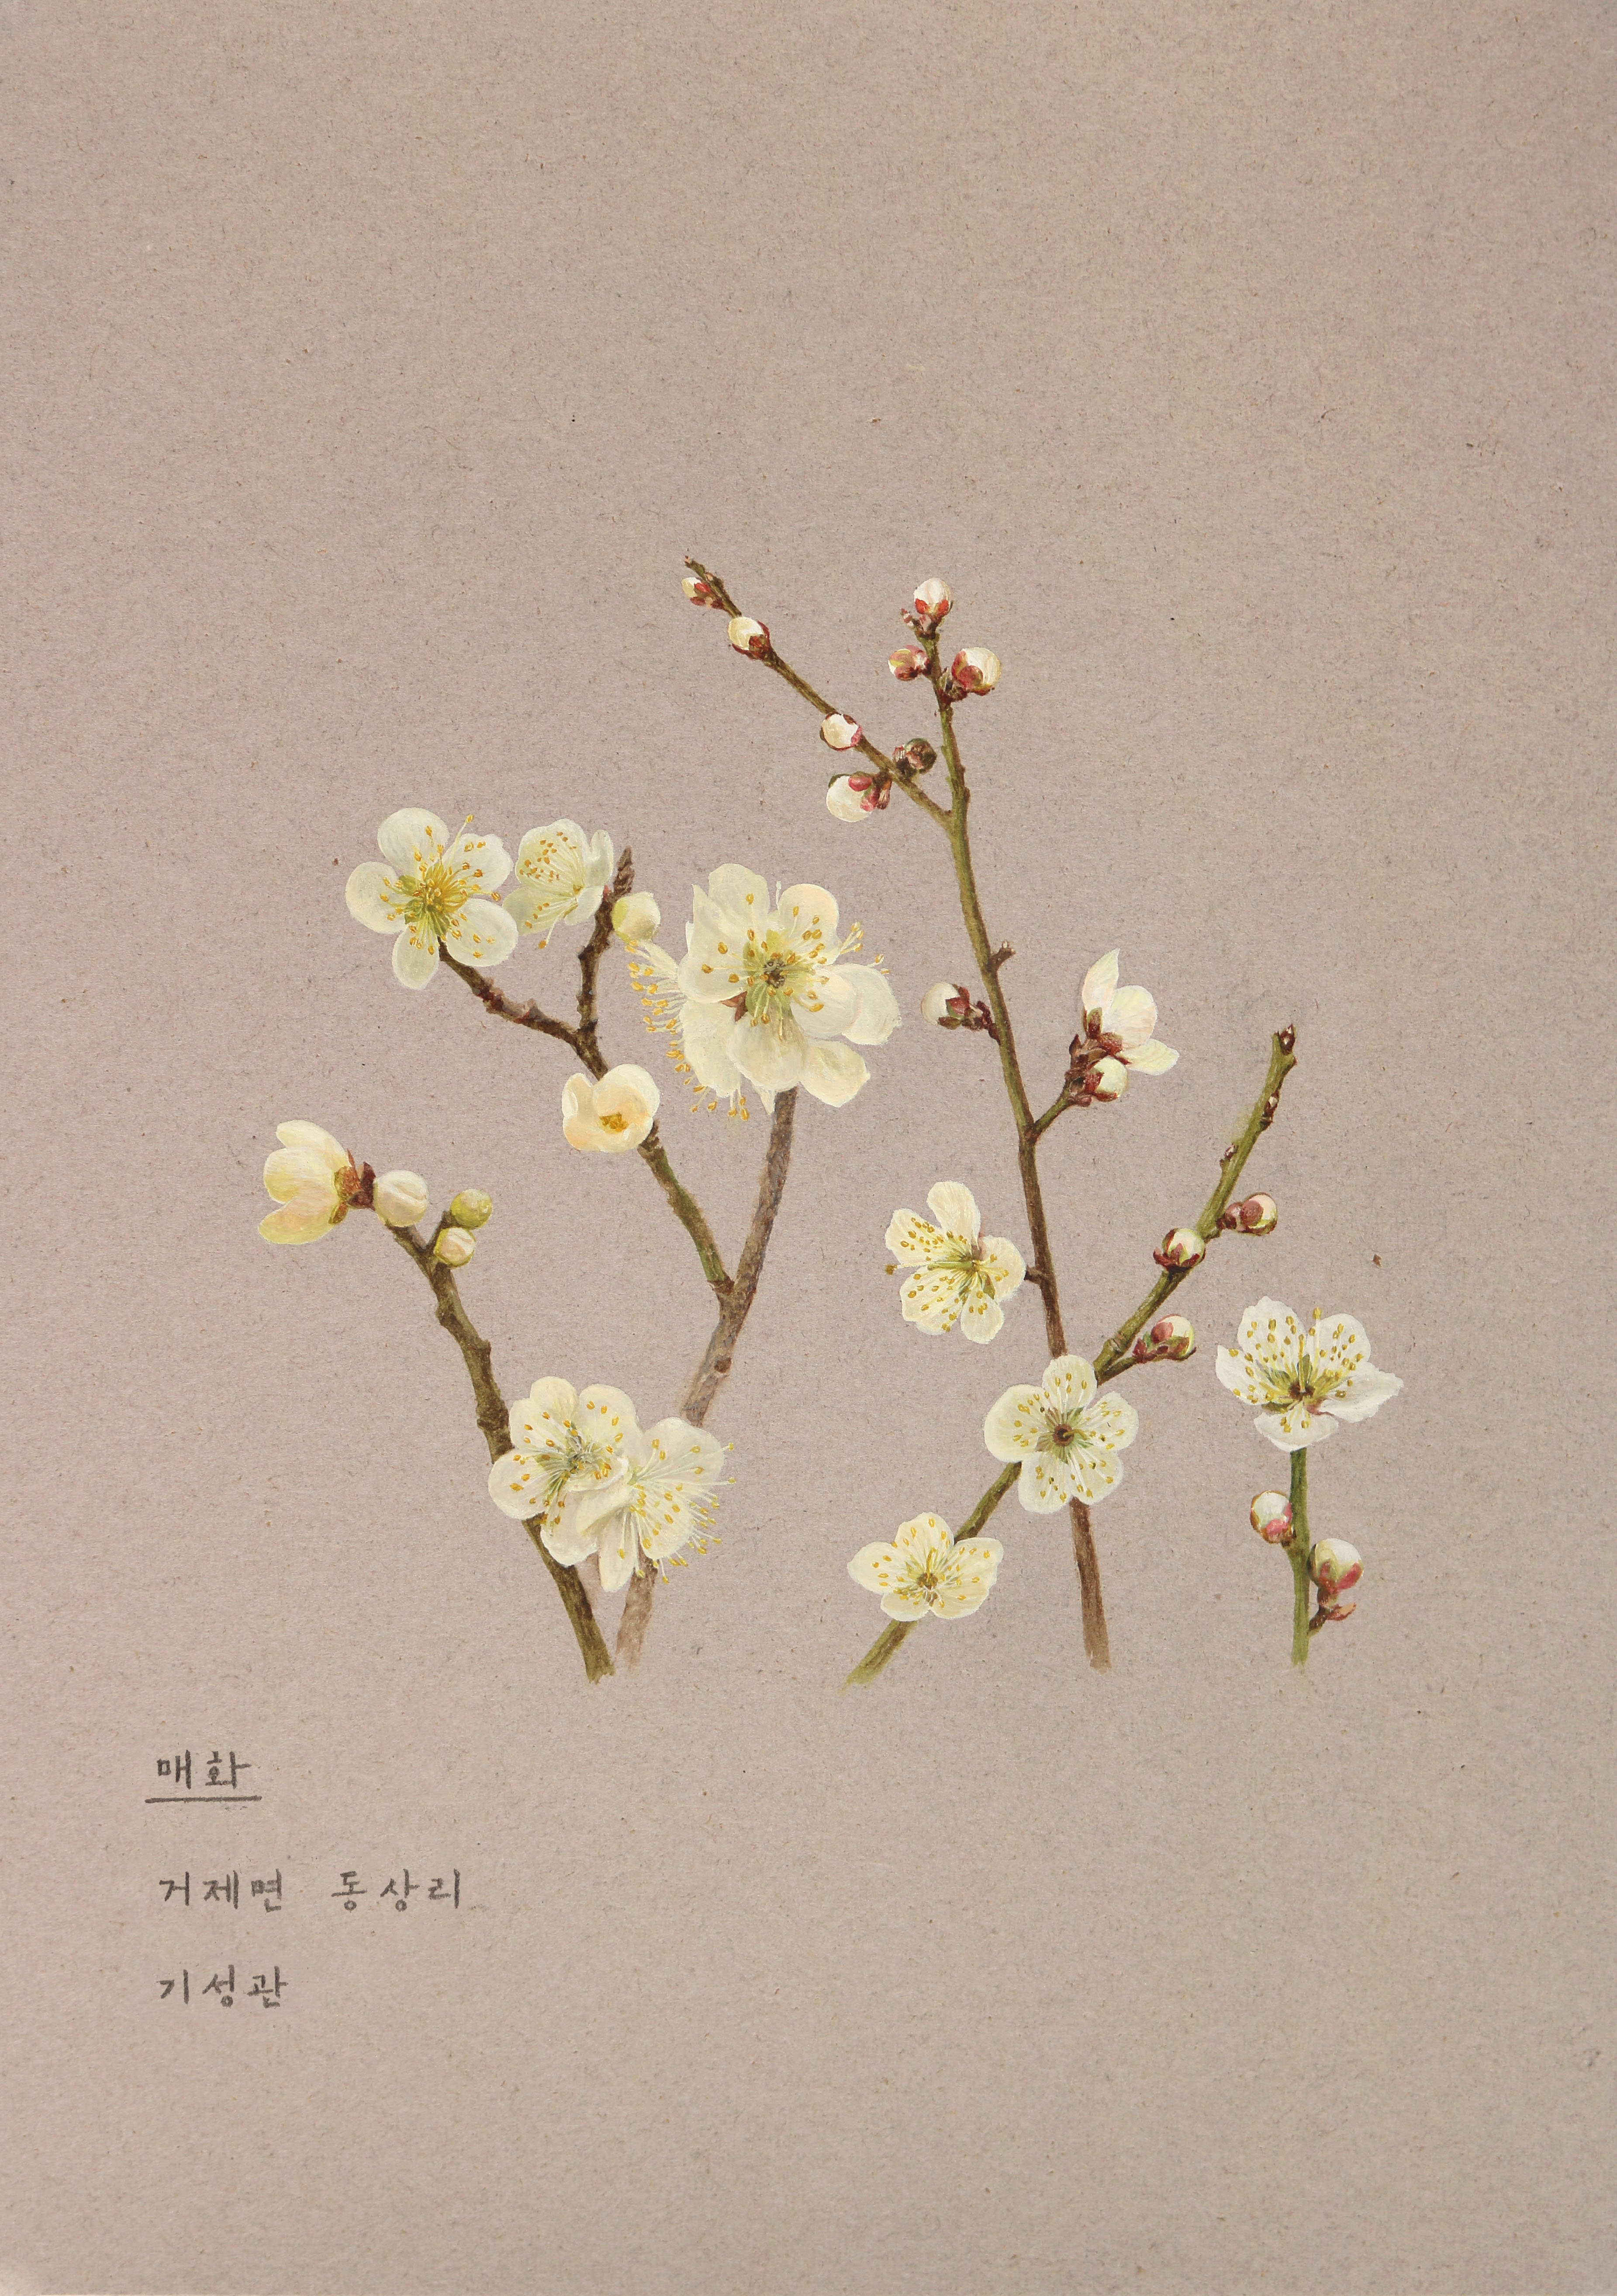 거제, 열두 달 꽃을 피우다(2월_매화)